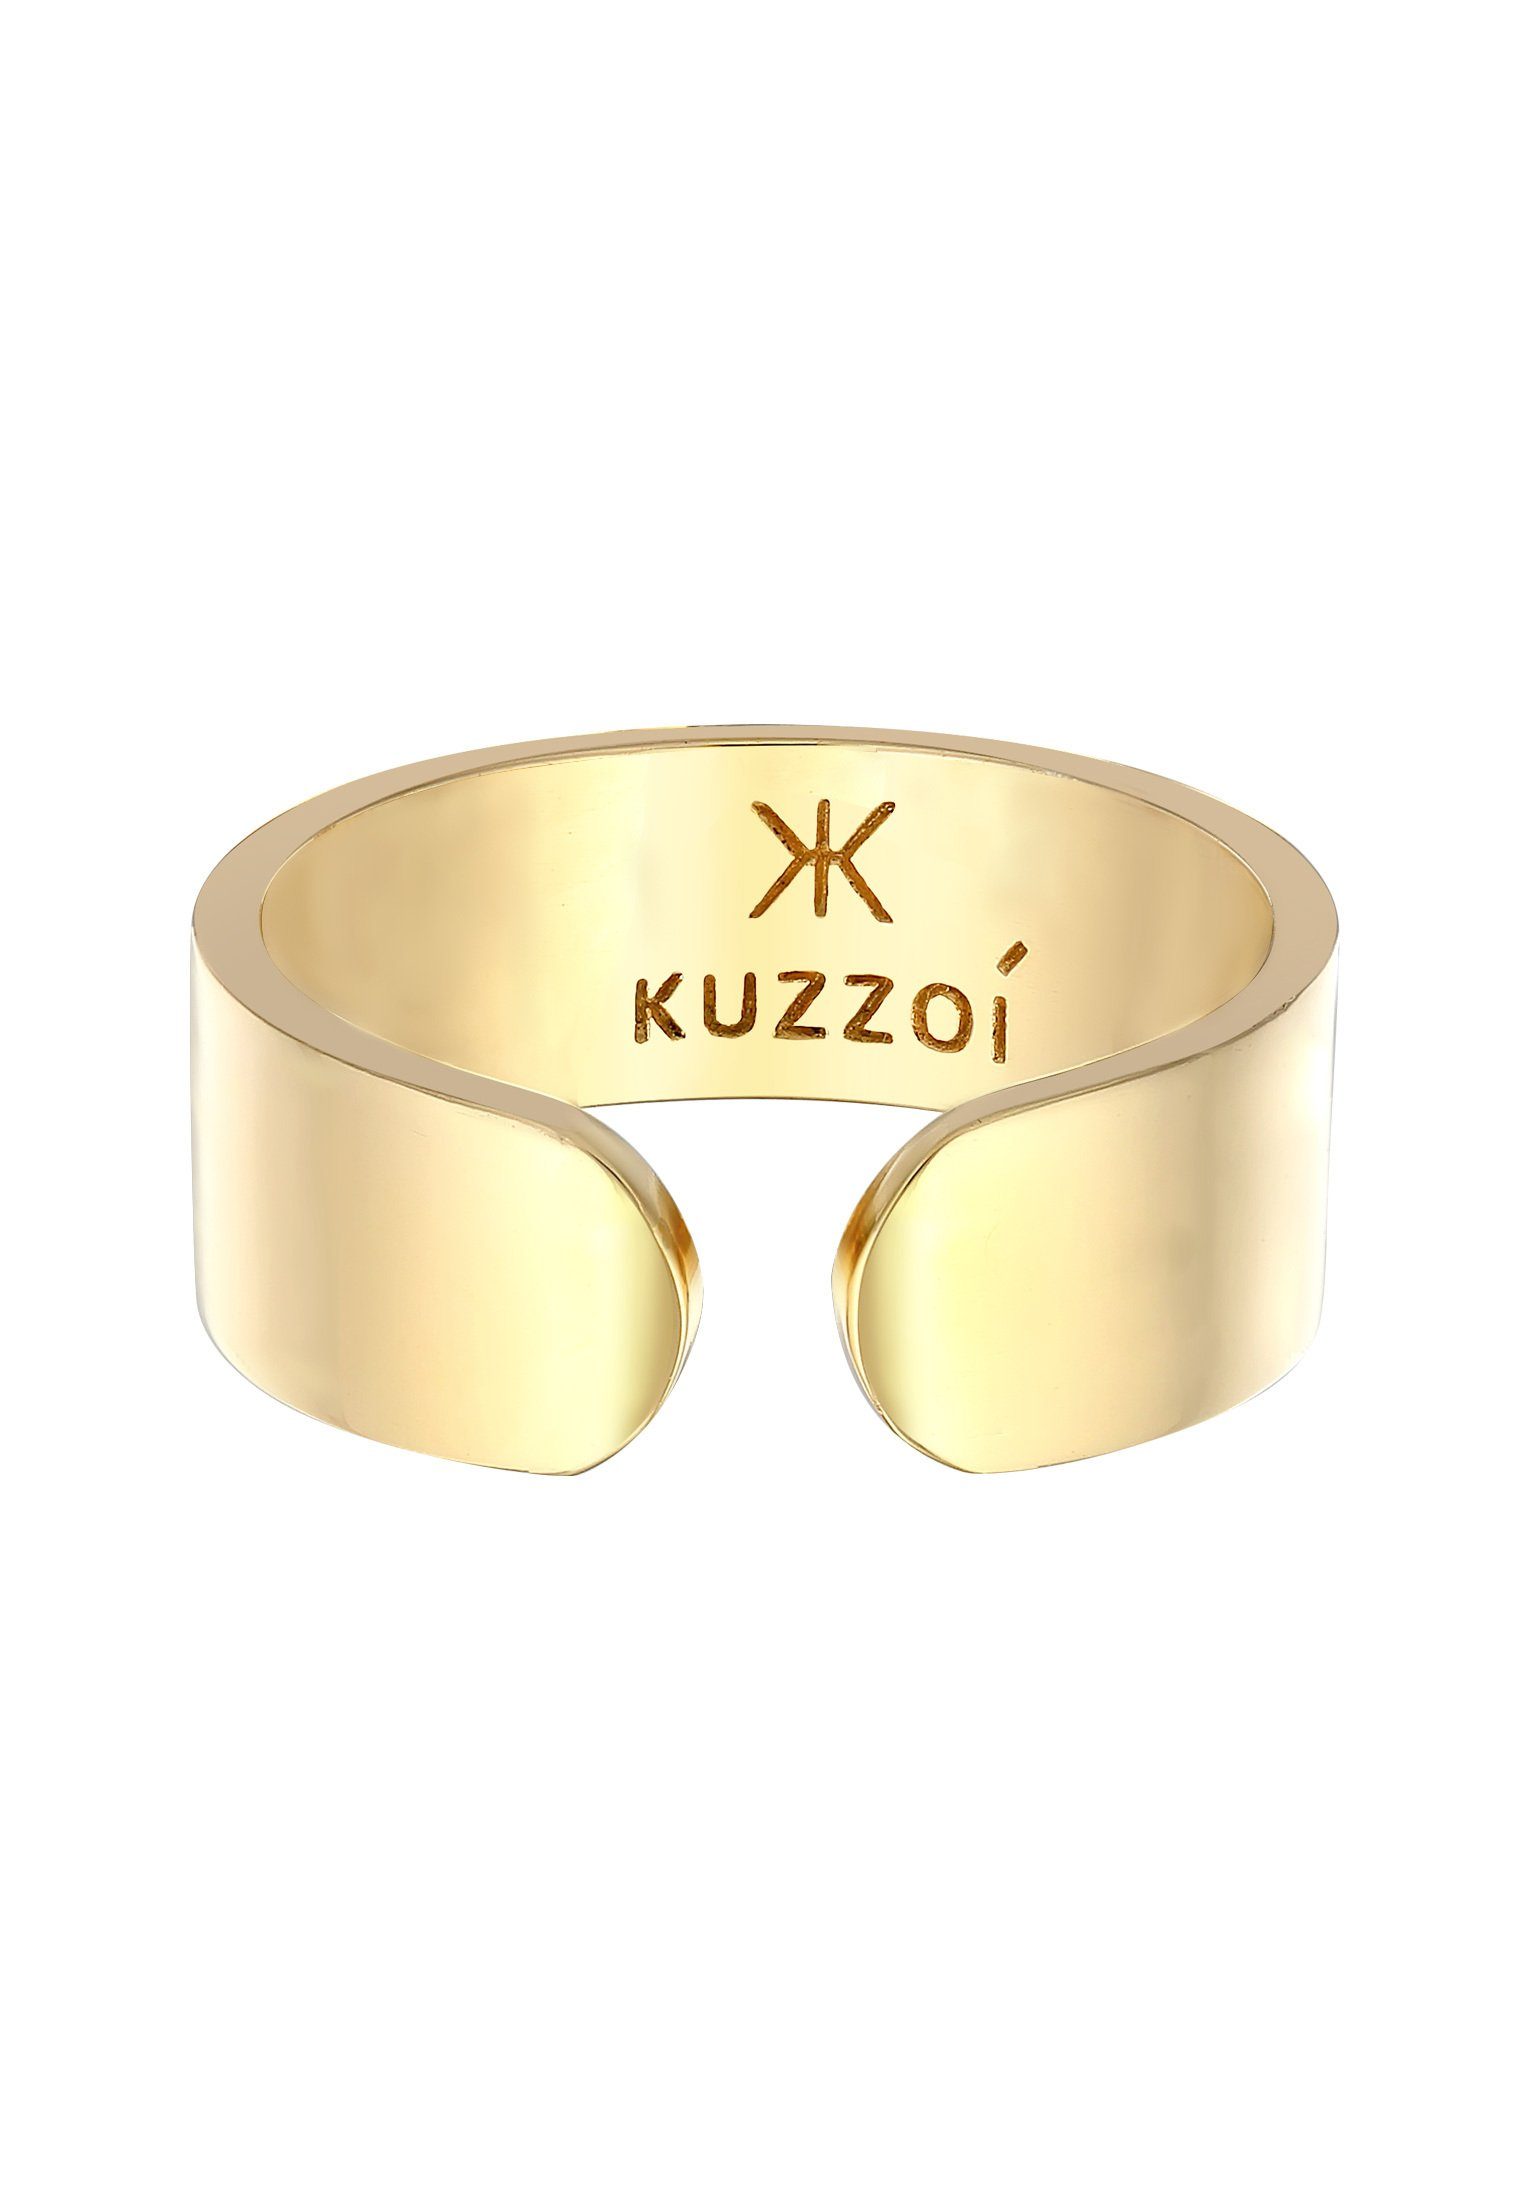 925 Gold Offen Bandring Silber Kuzzoi Klares Silberring Design